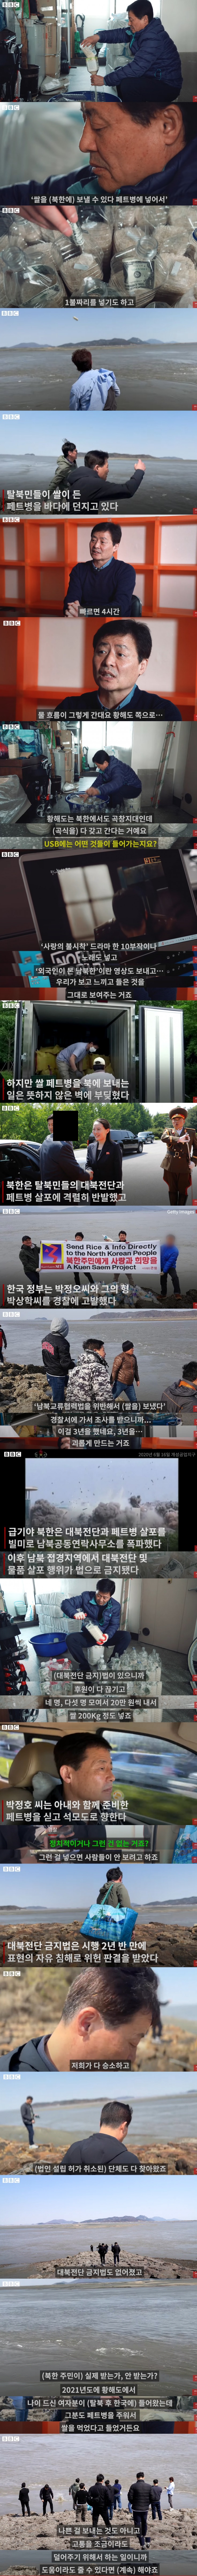 탈북자들이 북한으로 쌀 보내는 방법